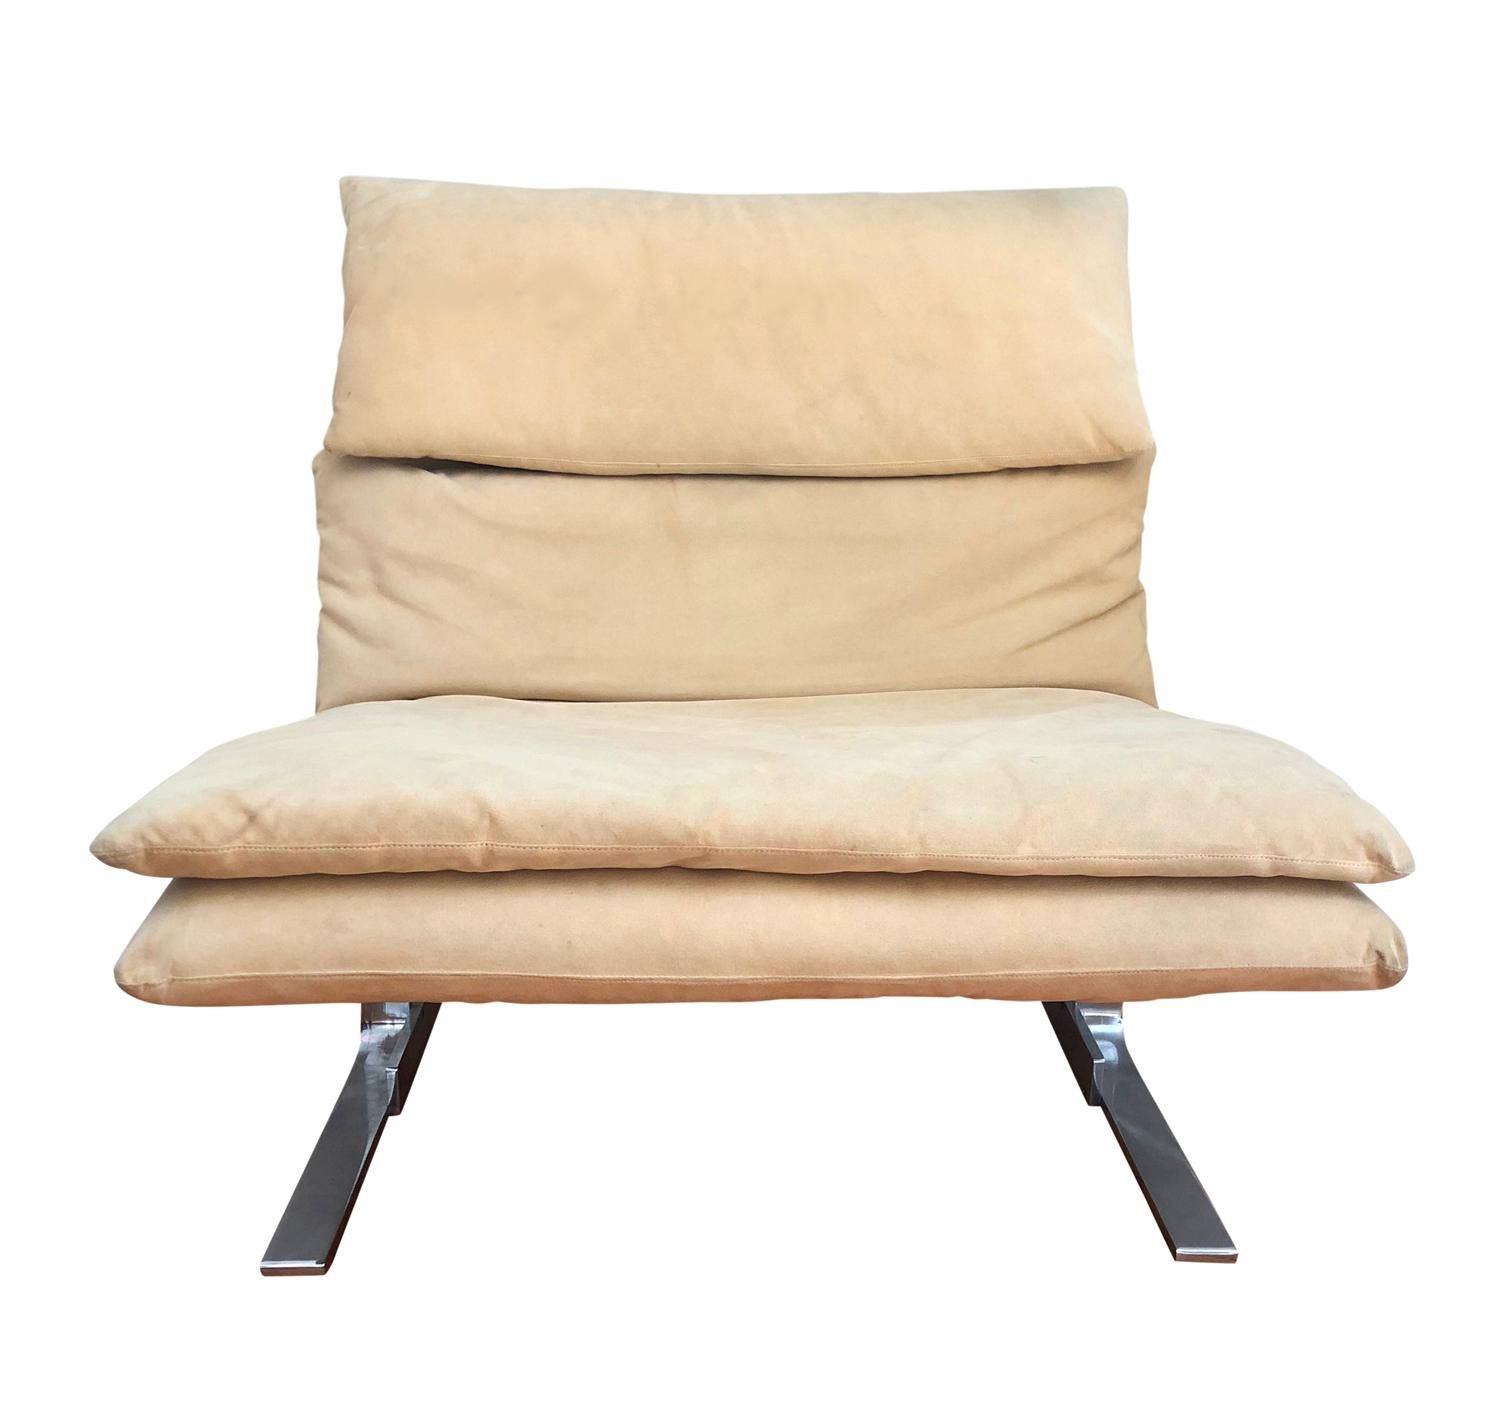 Pair of Midcentury Italian Modern Onda Slipper Lounge Chairs by Saporiti 1